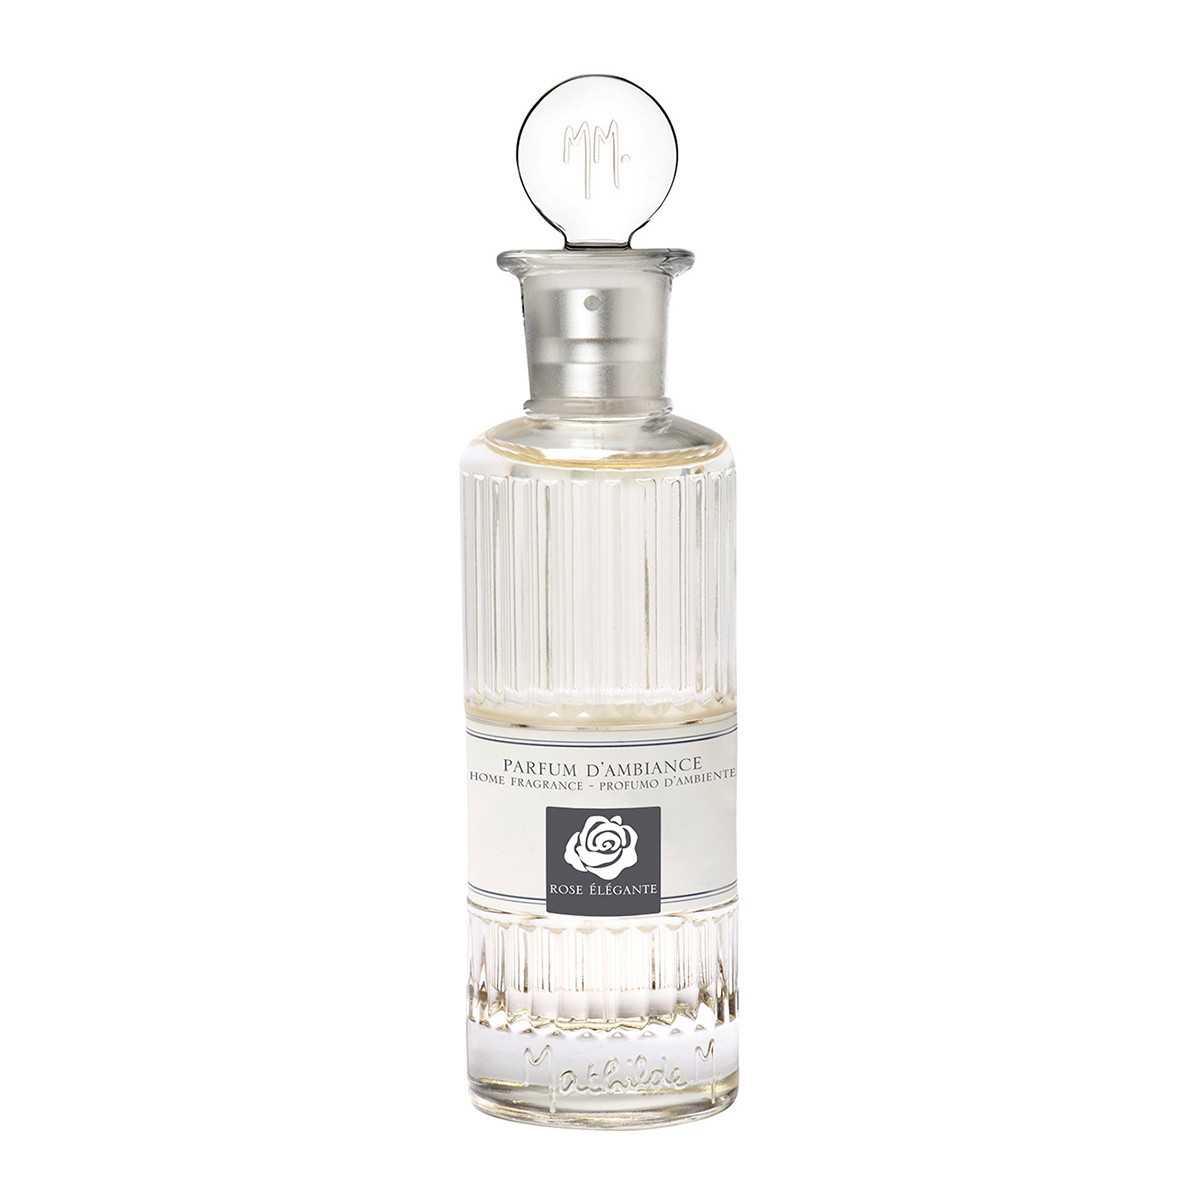 INTERIEUR- DECORATION|Linen fragrance 100 ml - Elegant roseMATHILDE MLinen perfume